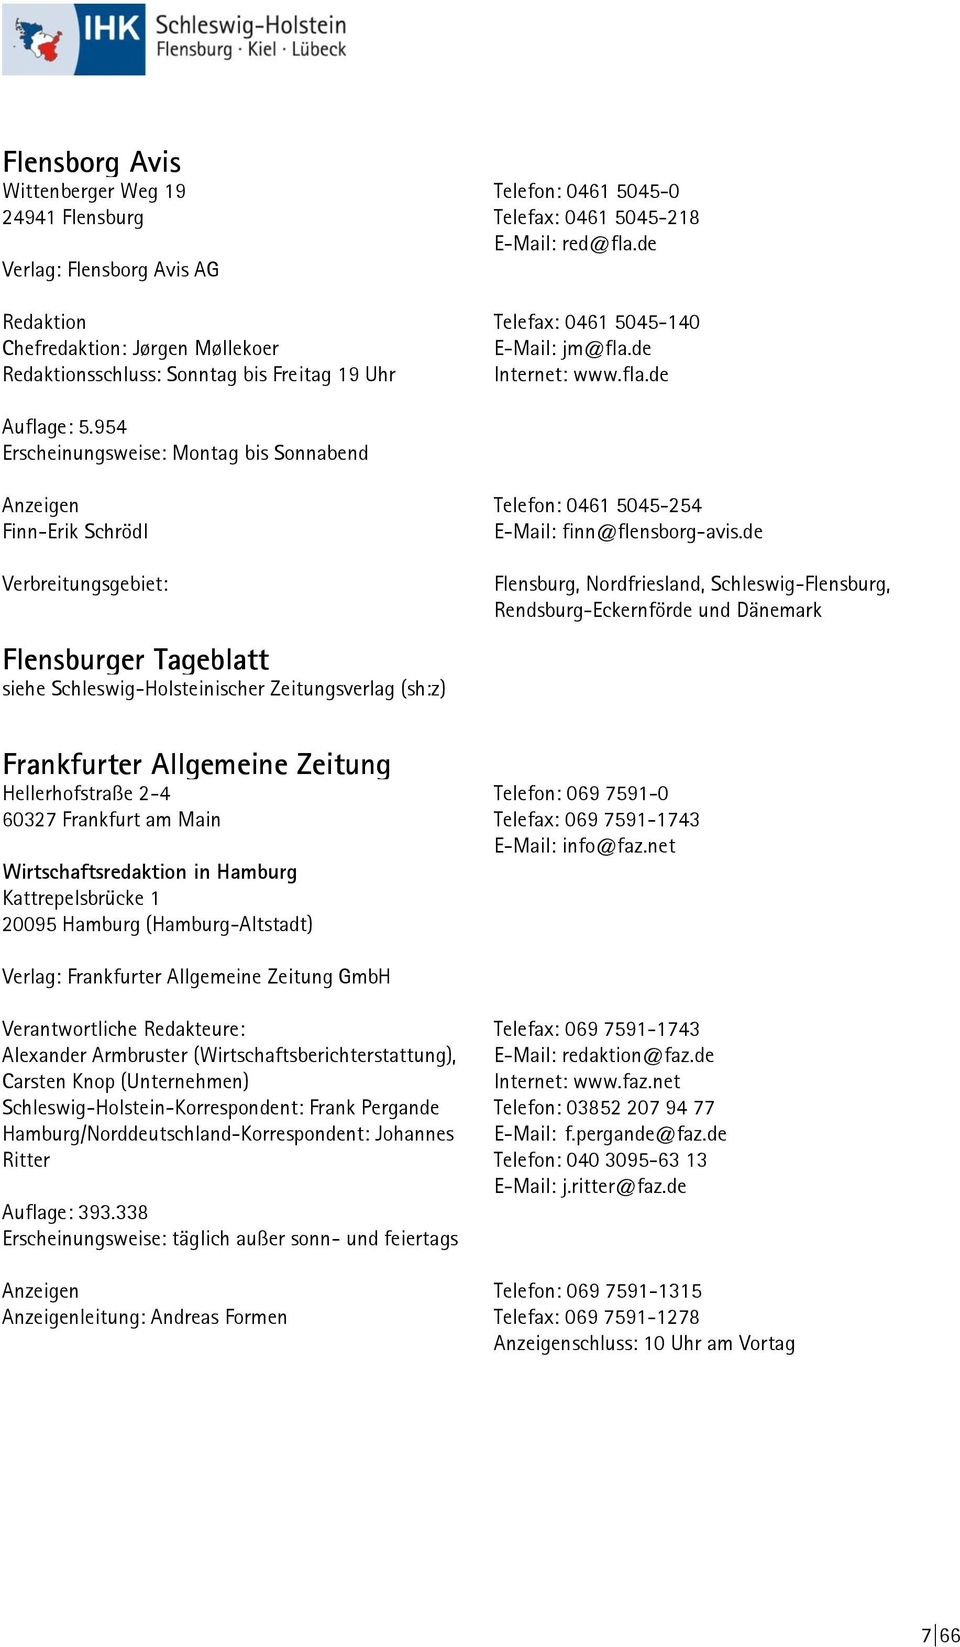 954 Erscheinungsweise: Montag bis Sonnabend Anzeigen Finn-Erik Schrödl Verbreitungsgebiet: Flensburger Tageblatt siehe Schleswig-Holsteinischer Zeitungsverlag (sh:z) Telefon: 0461 5045-254 E-Mail: